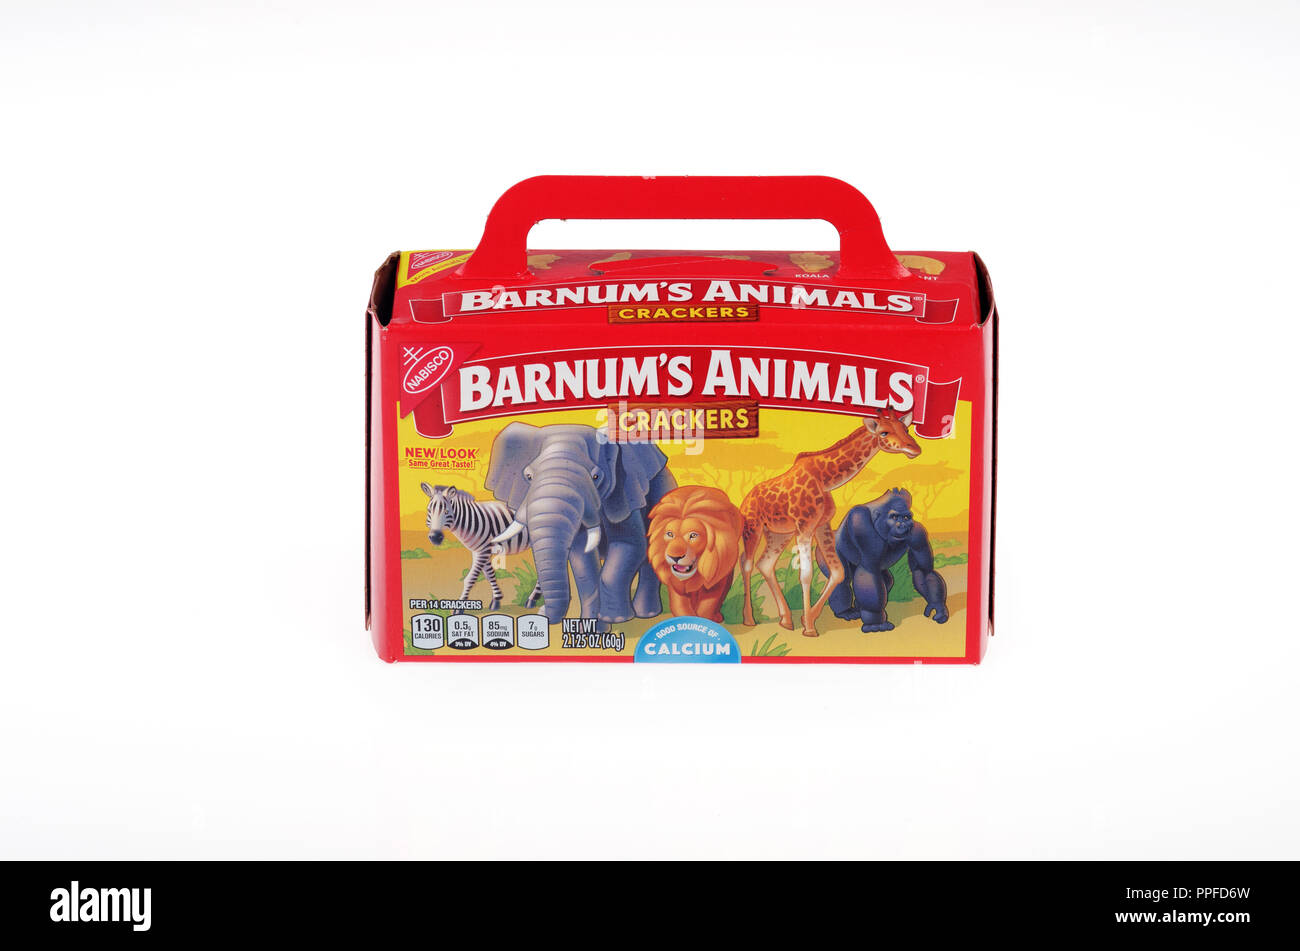 Box von Nabisco Barnum der Tiere Cracker in der Neuen 2018 Käfig frei Verpackung nicht mehr mit der Darstellung der Tiere in Käfigen als ursprünglich eingeführt Stockfoto